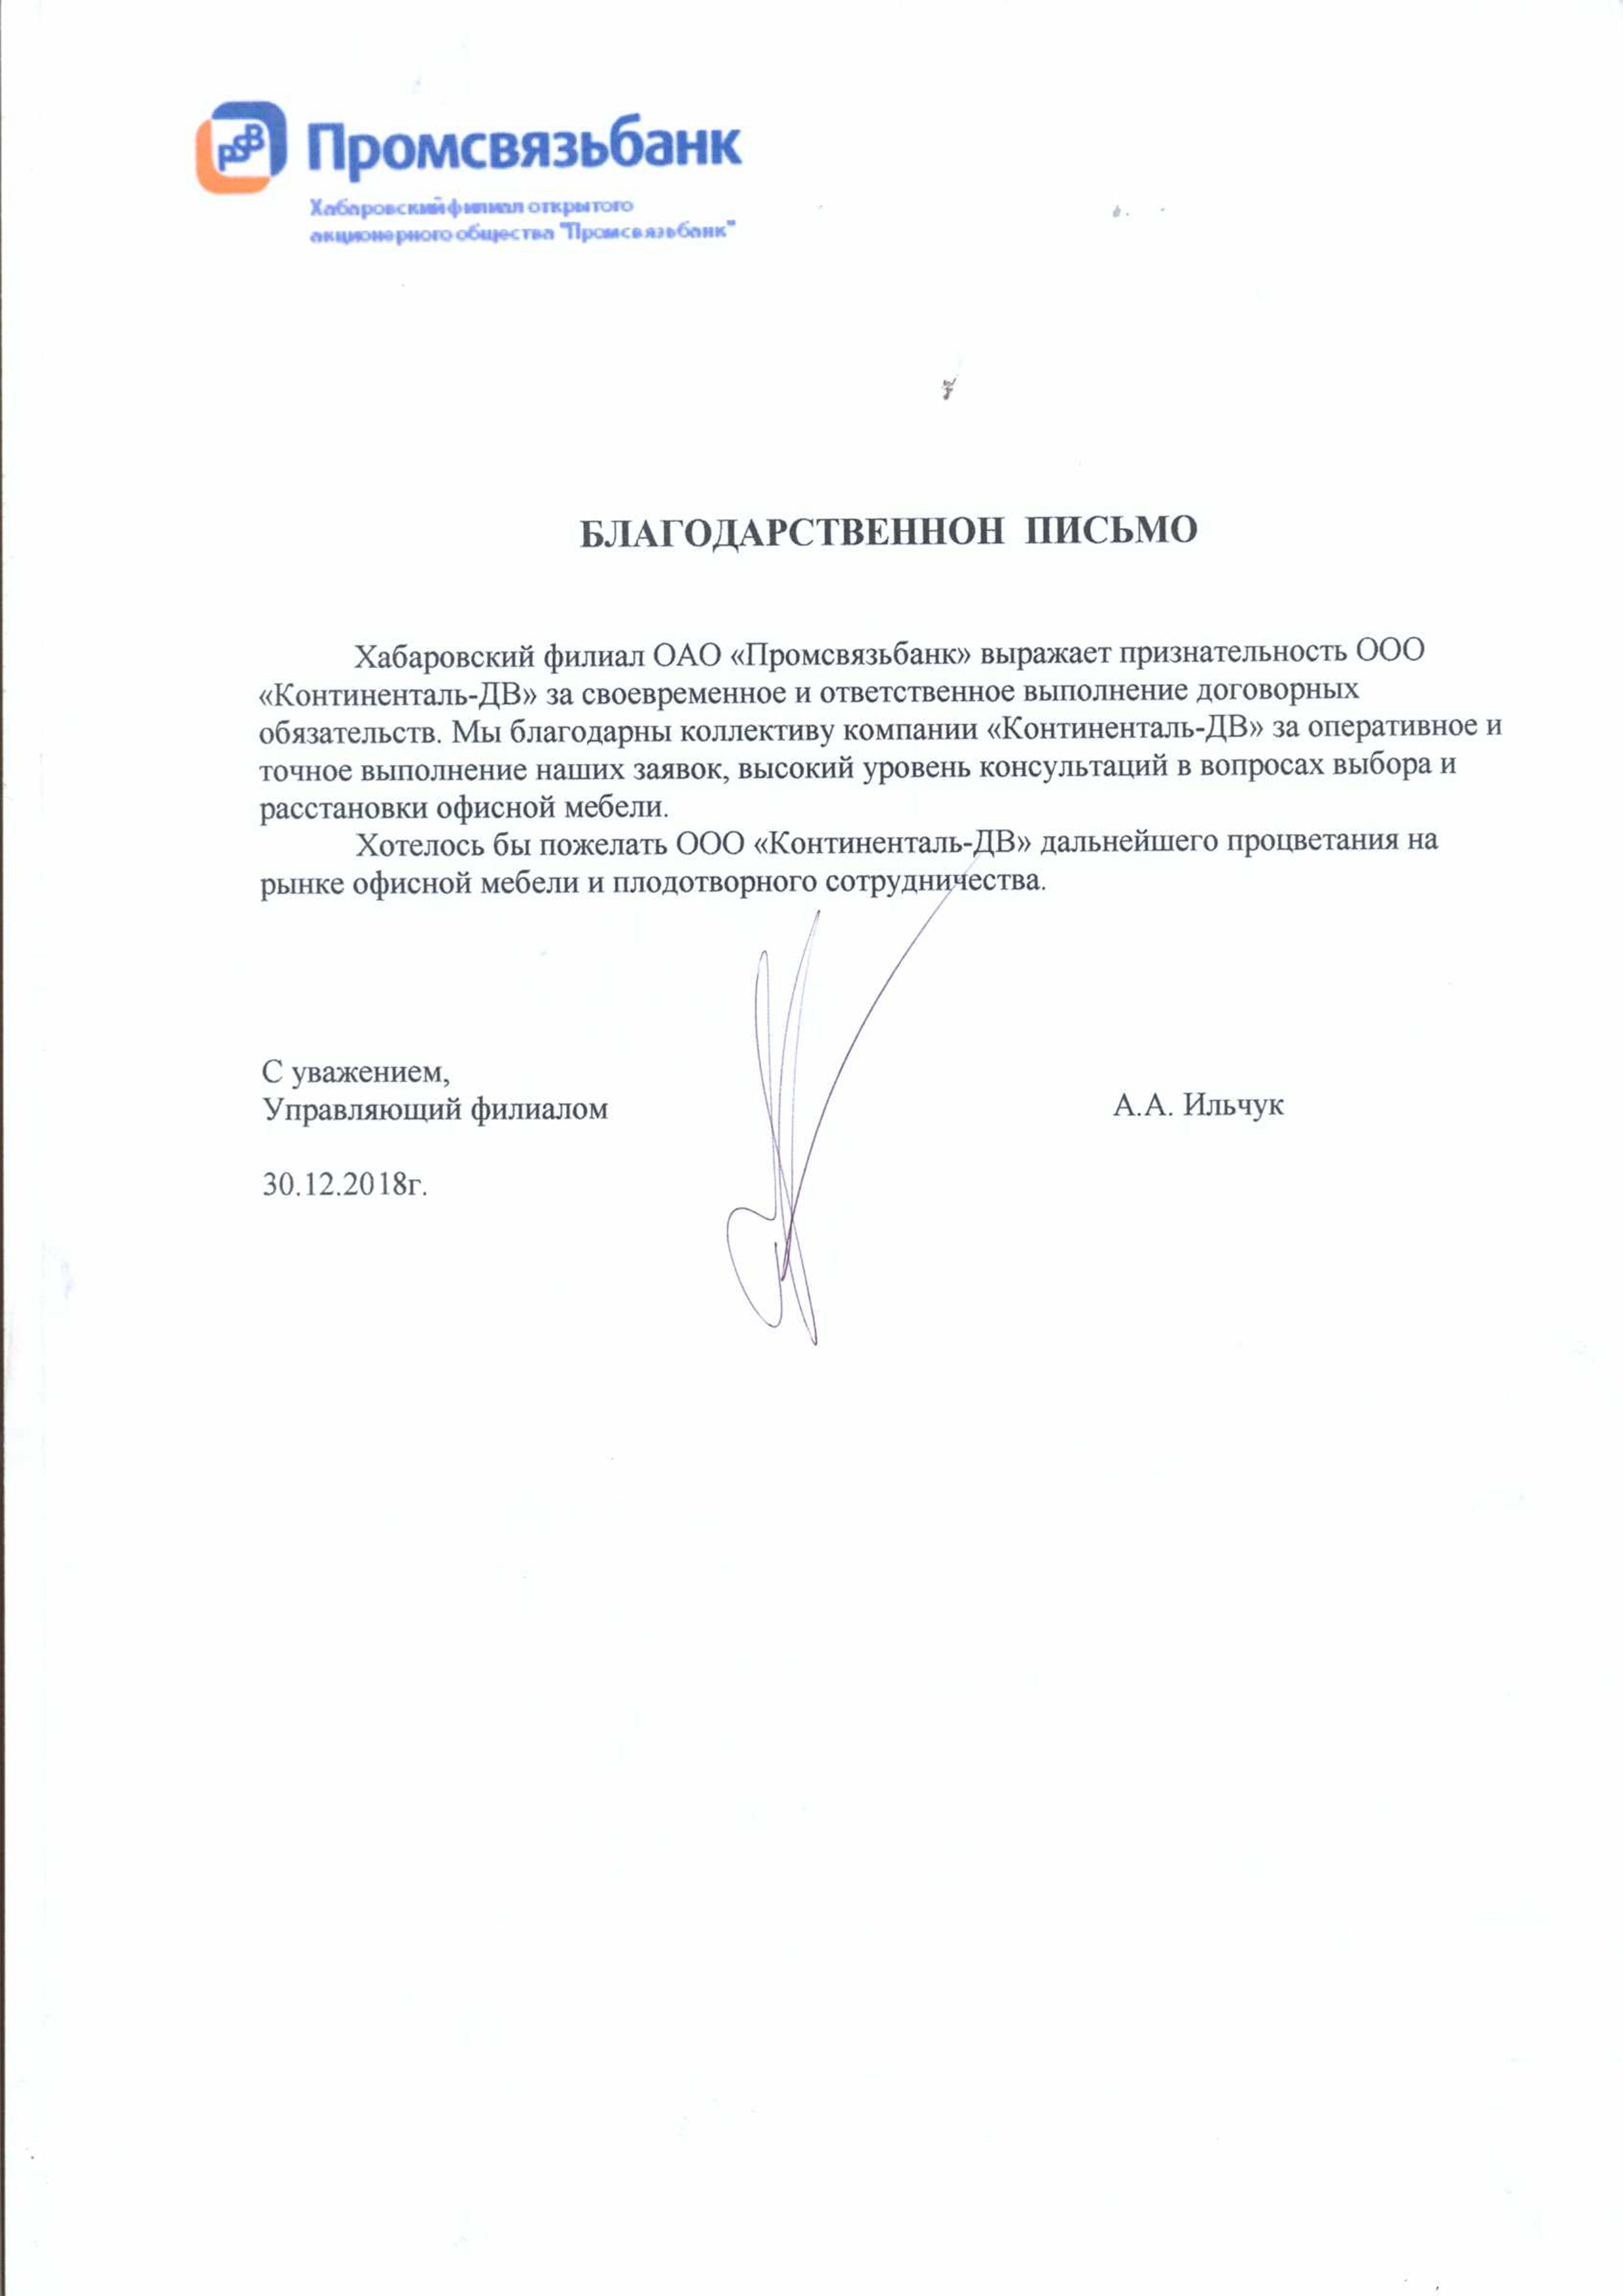 Хабаровский филиал ОАО "Промсвязьбанк" выражает признательность за своевременное и ответственное выполнение договорных обязательств